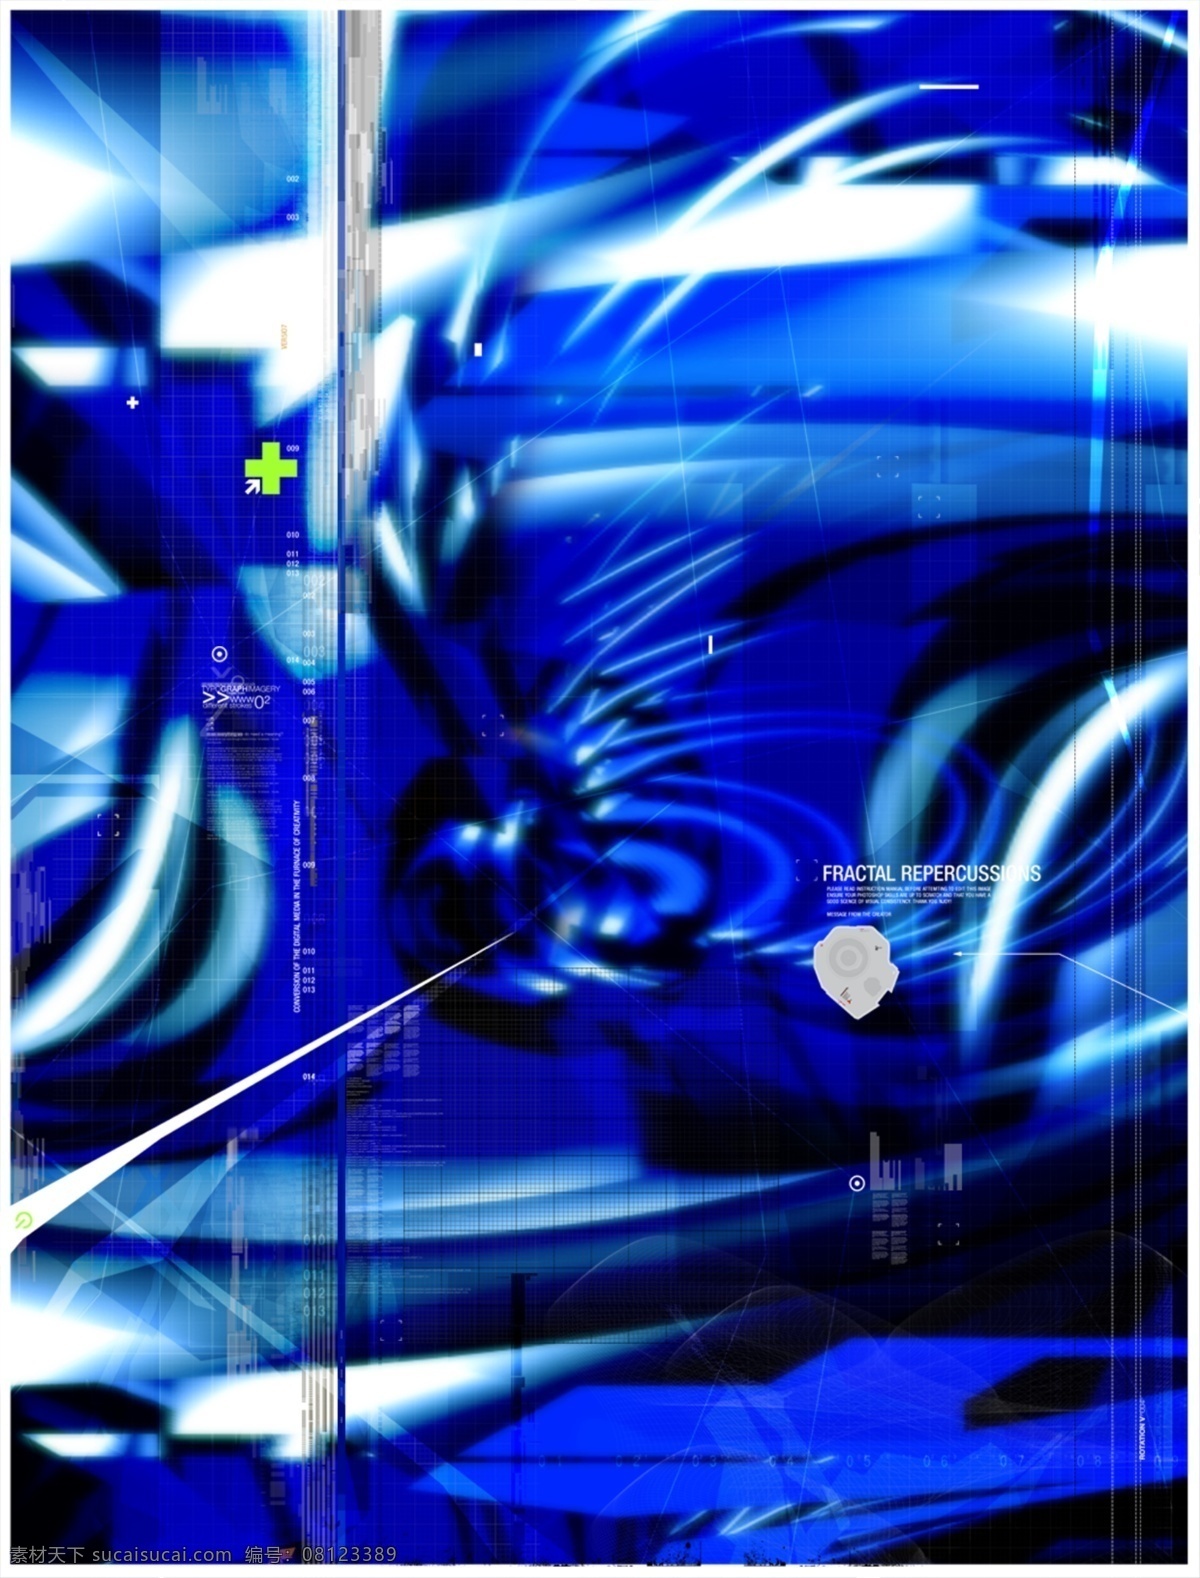 数码 游戏背景 分层 蓝色 雕塑 3d 抽象 底纹 动感 后现代 科技 力量 梦幻 前卫 蓝色雕塑 游戏背景设计 异度空间 速度 艺术 张力 原创设计 其他原创设计